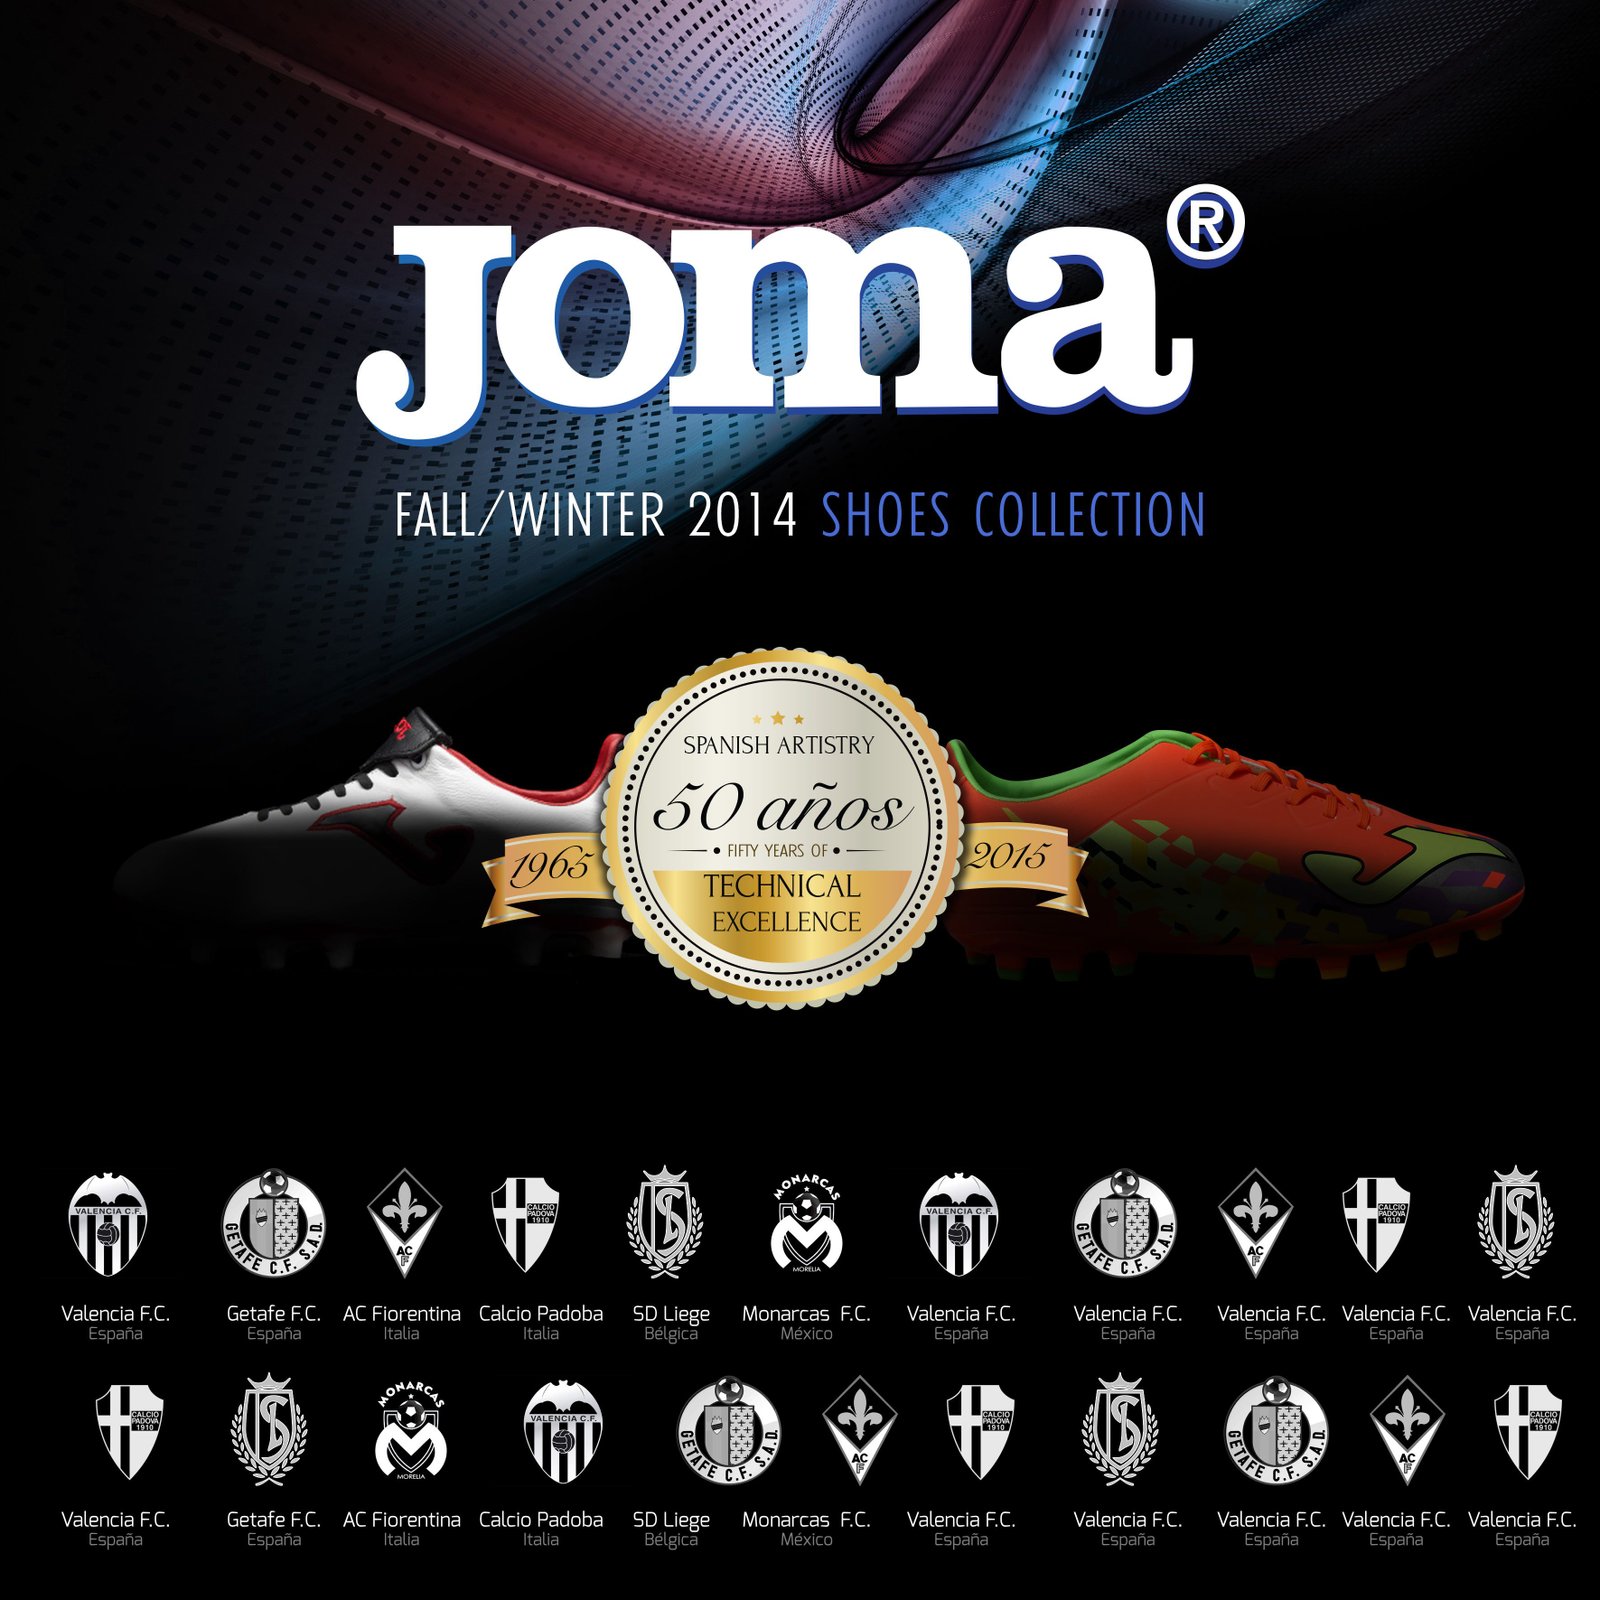 diseño portada catalogo de productos Joma Brandesign madrid creativa agencia impresión publicidad